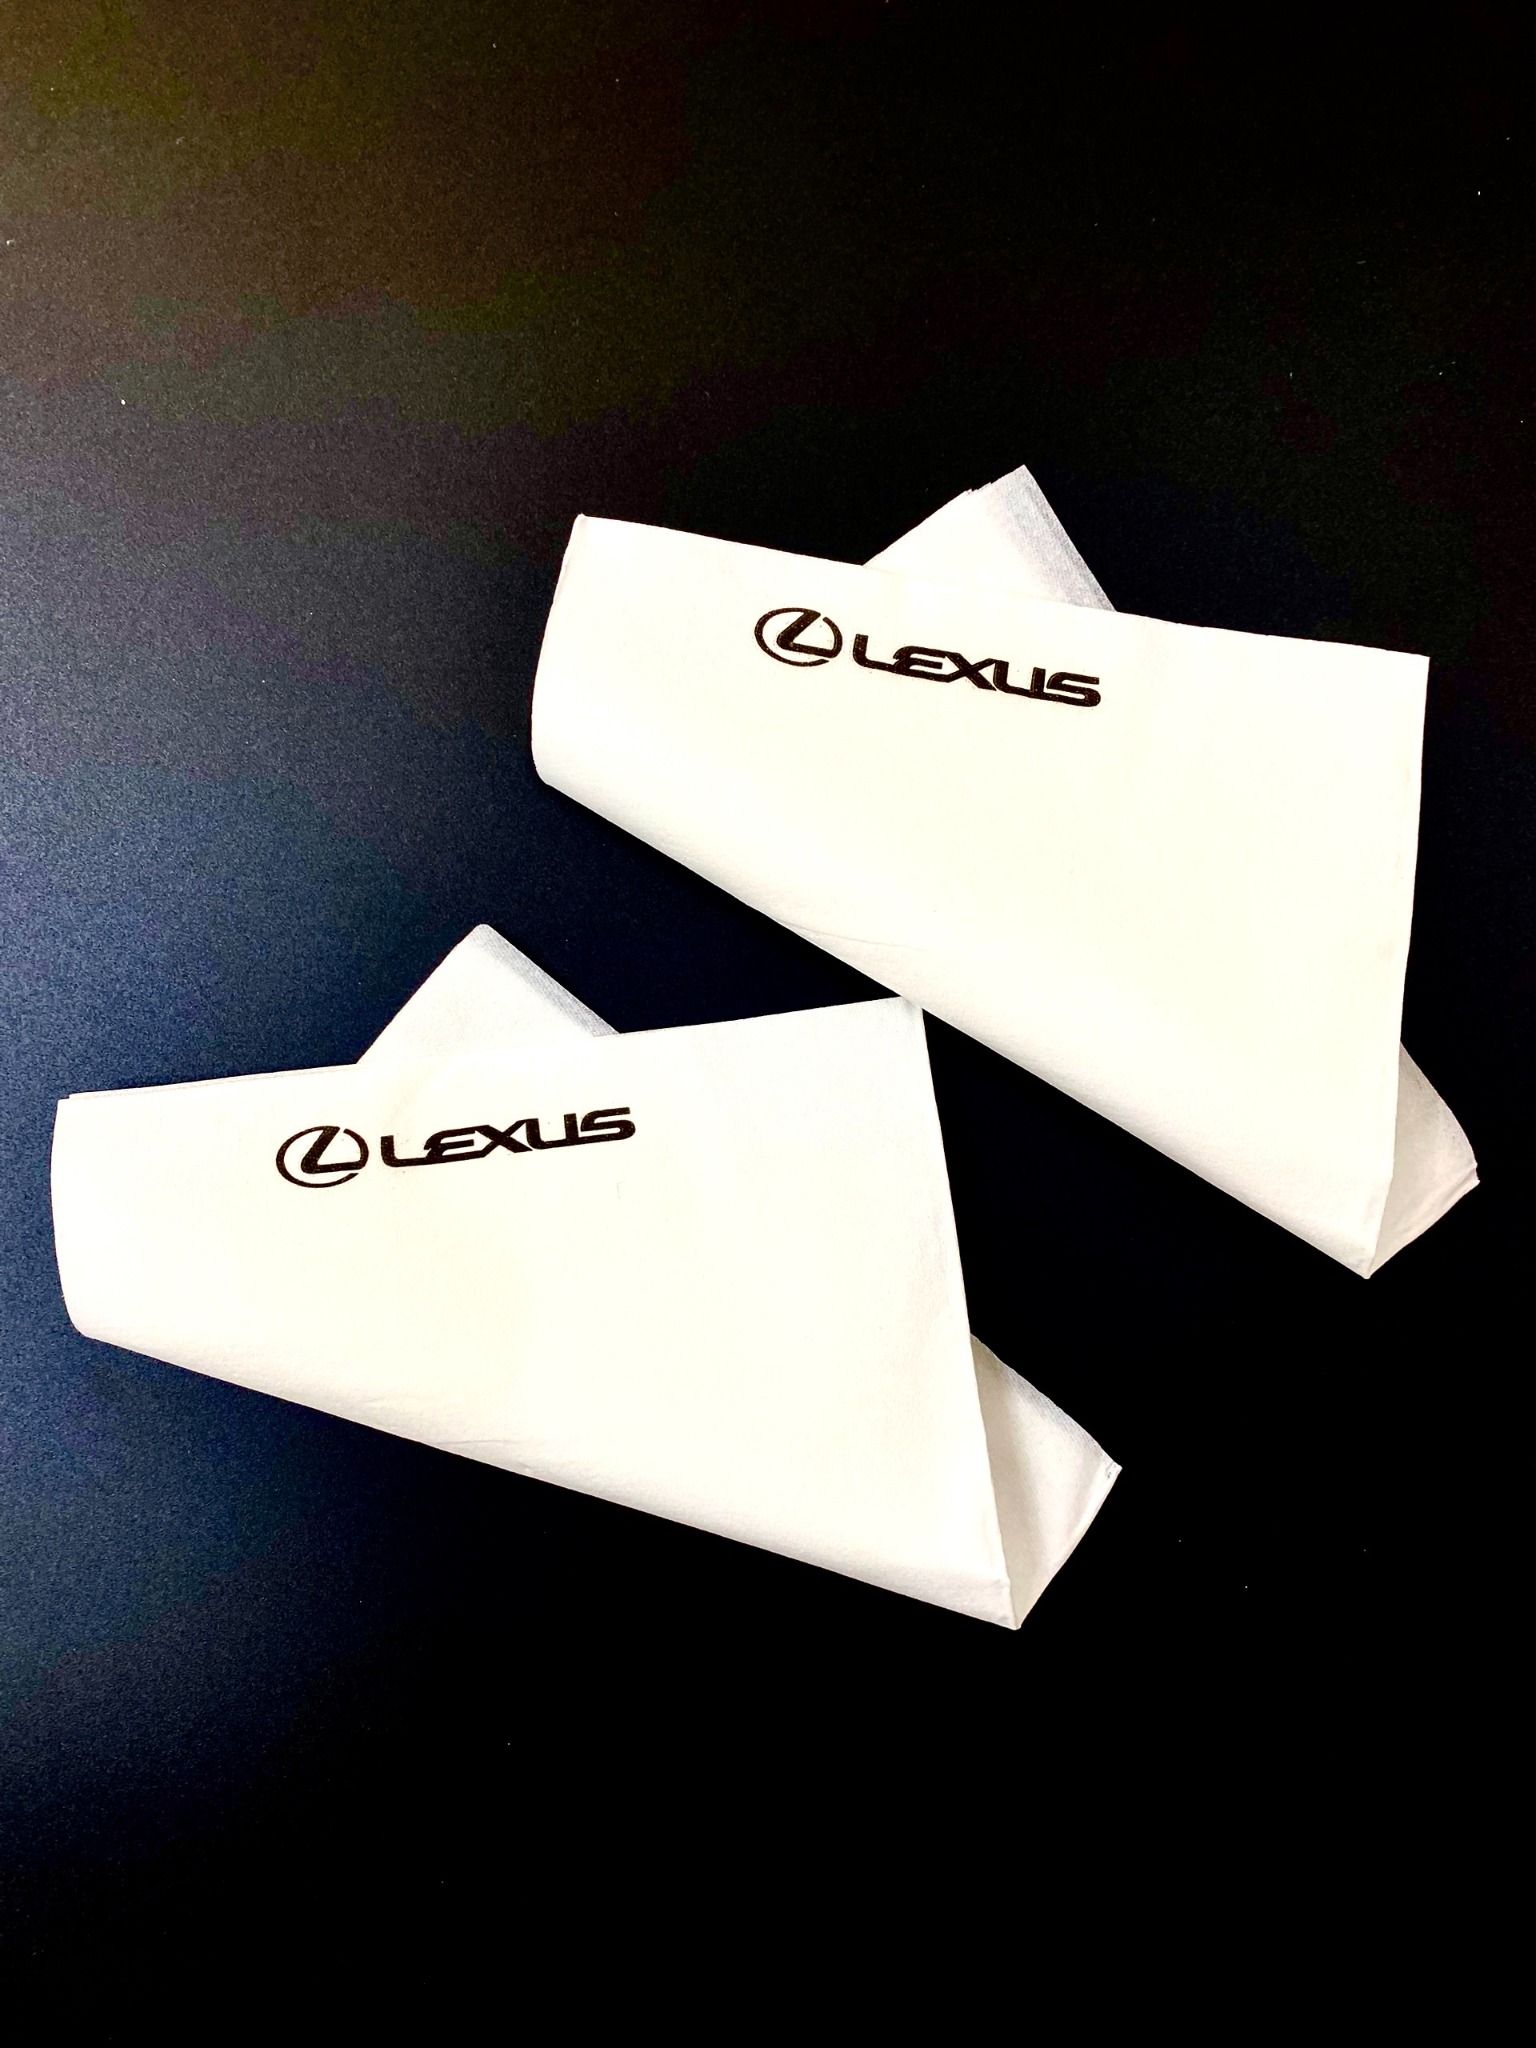  TECHMODULE - Sản xuất khăn giấy ăn in logo theo yêu cầu khách hàng - miễn phí thiết kế 